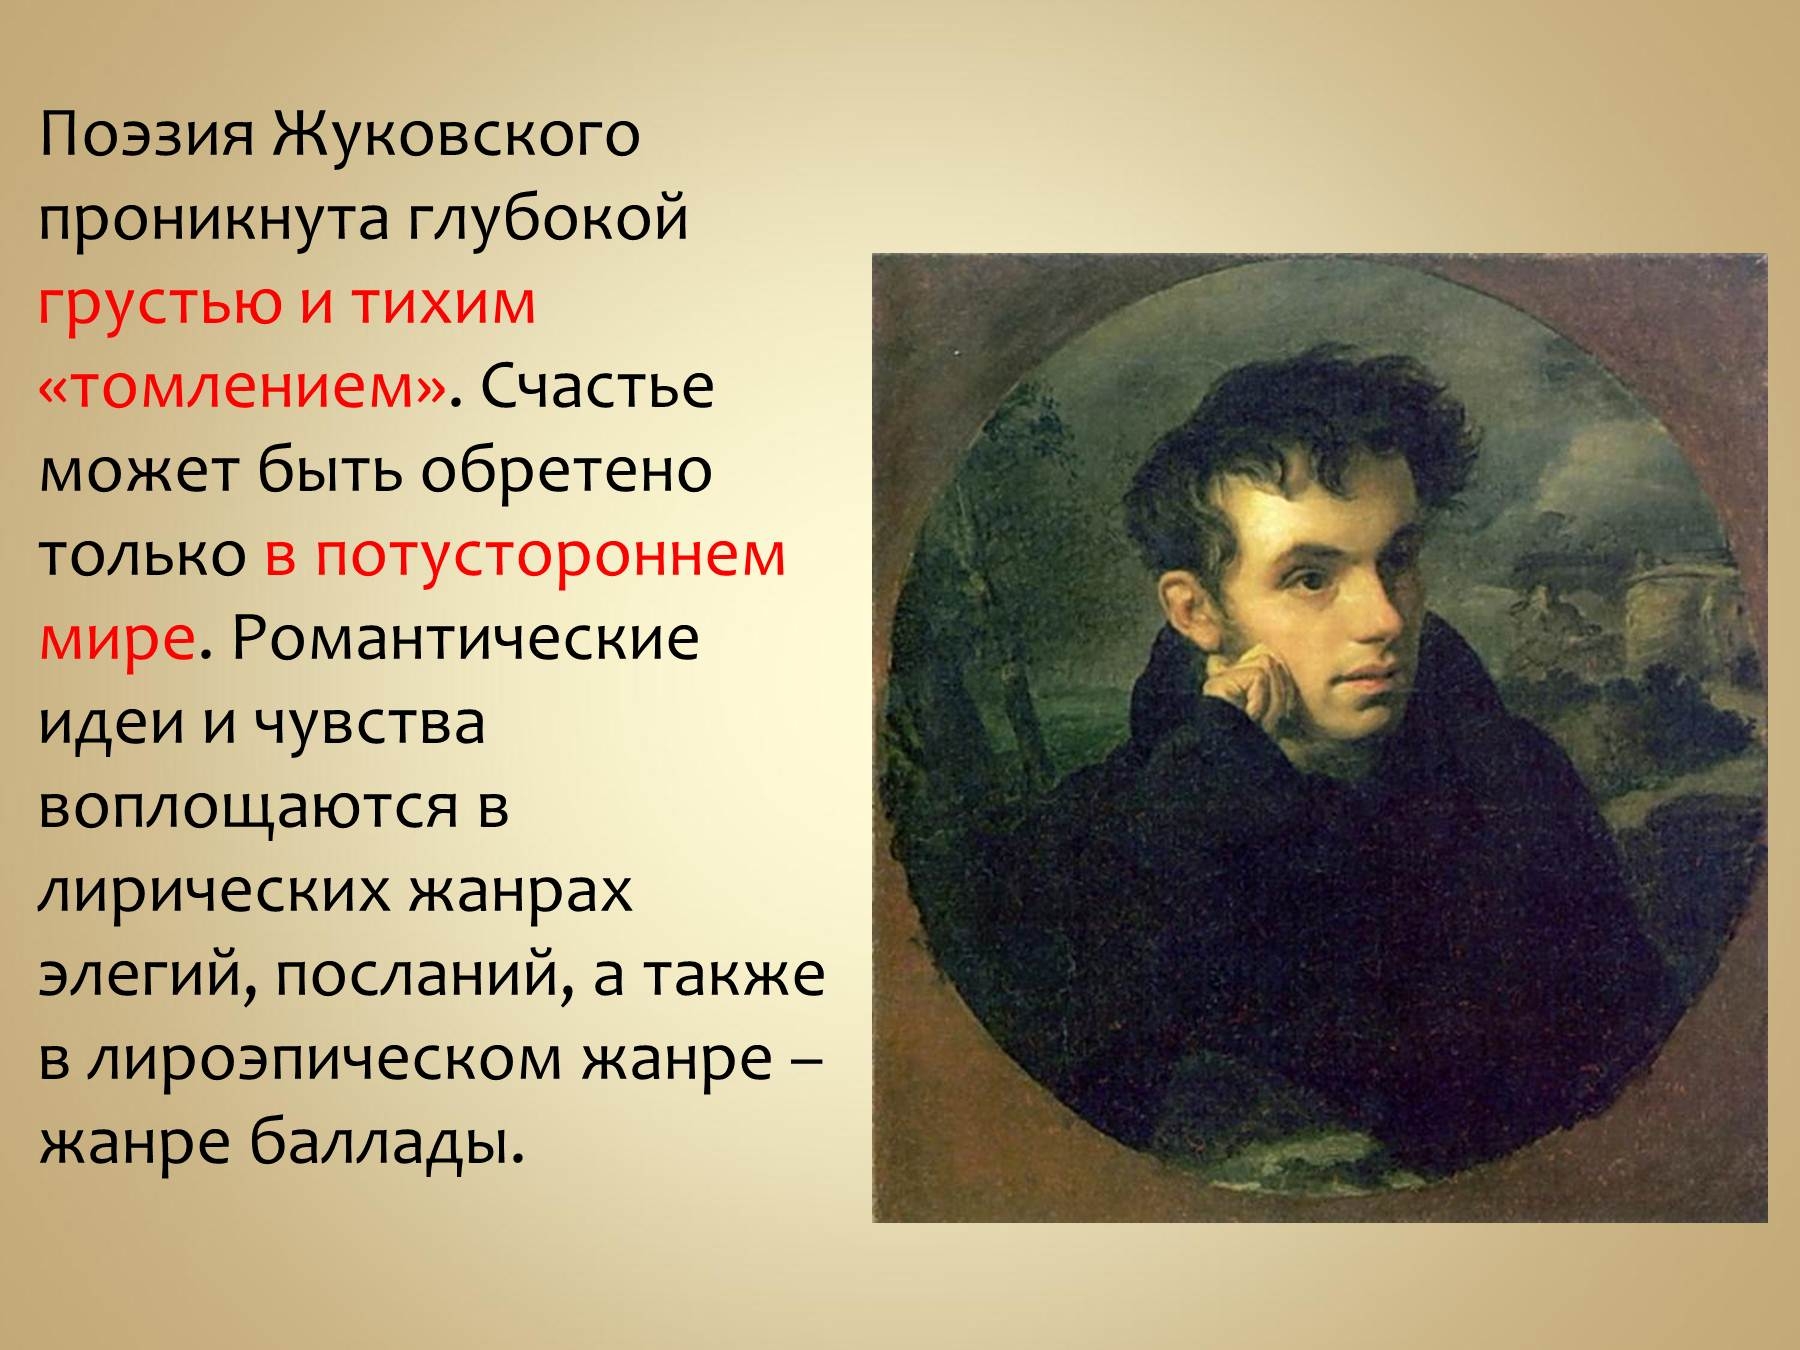 3 произведения жуковского. Жуковский поэт 19 века. Жизнь и творчество Жуковского.